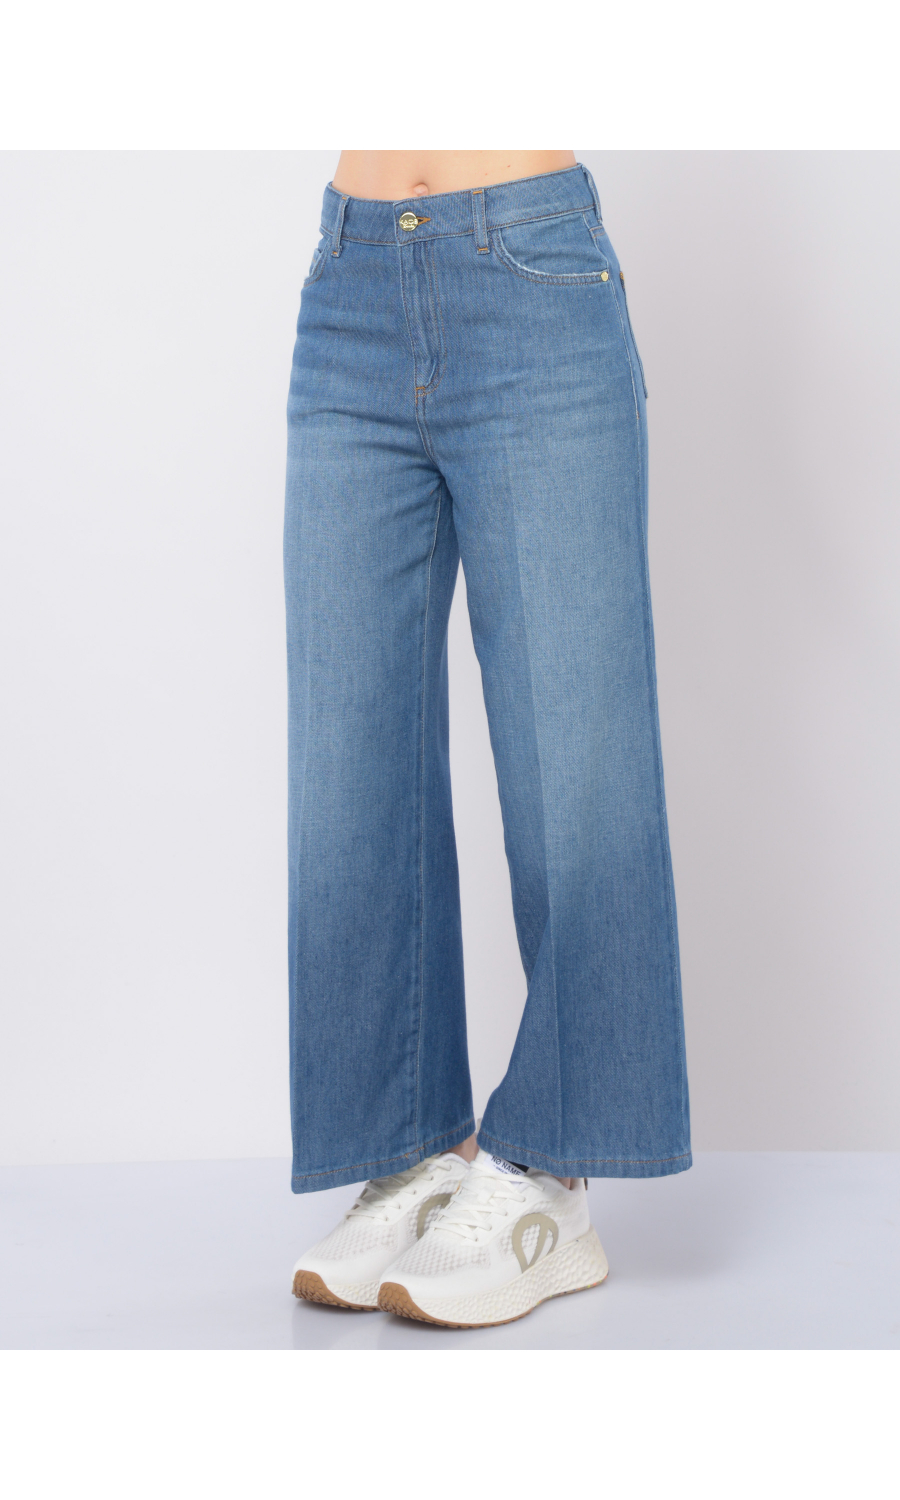 jeans da donna Kaos modello ampio e cropped